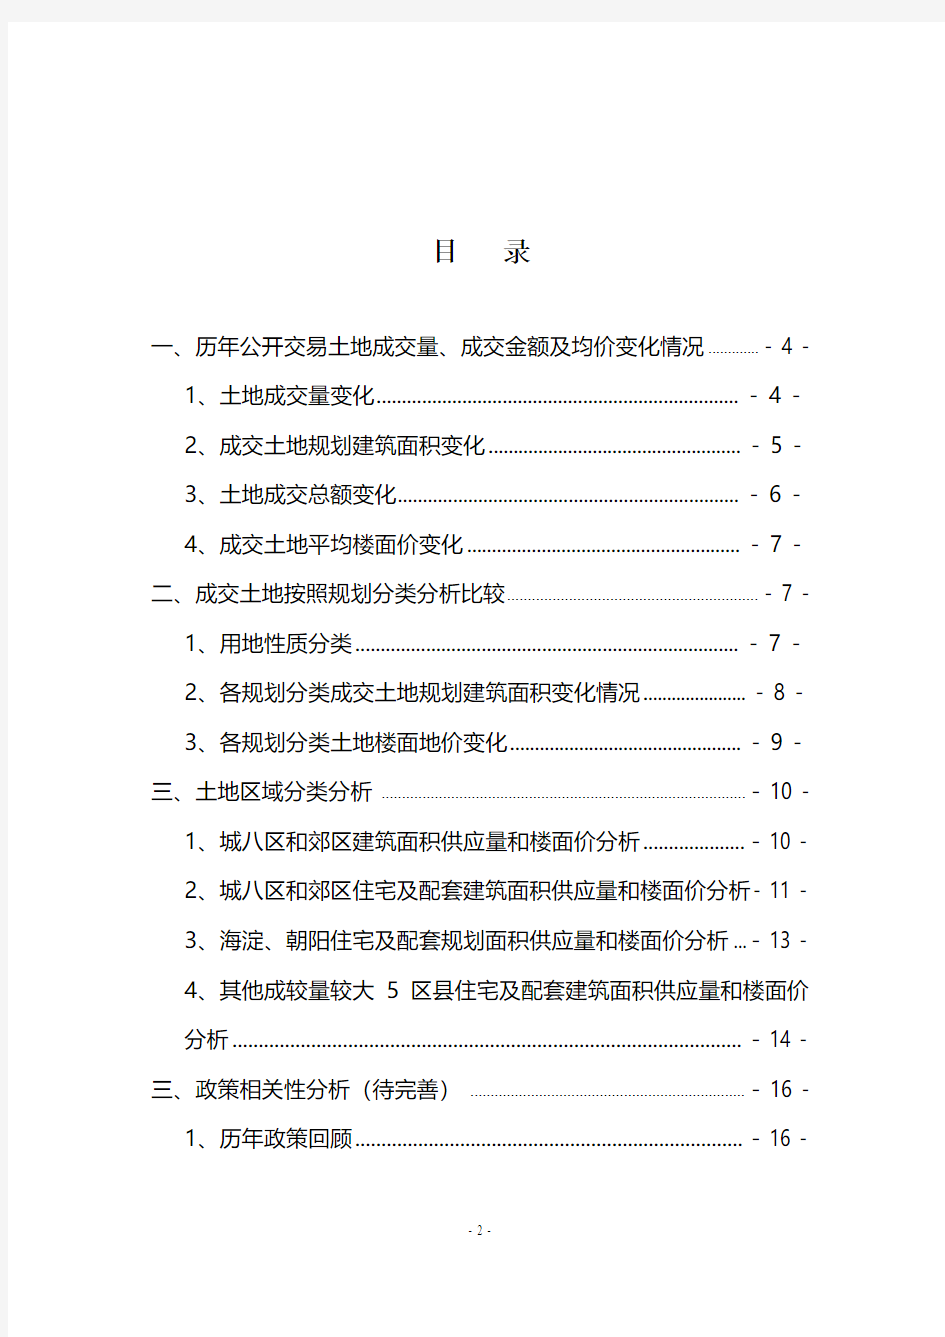 2003-2008年北京公开交易土地数据汇总分析-20